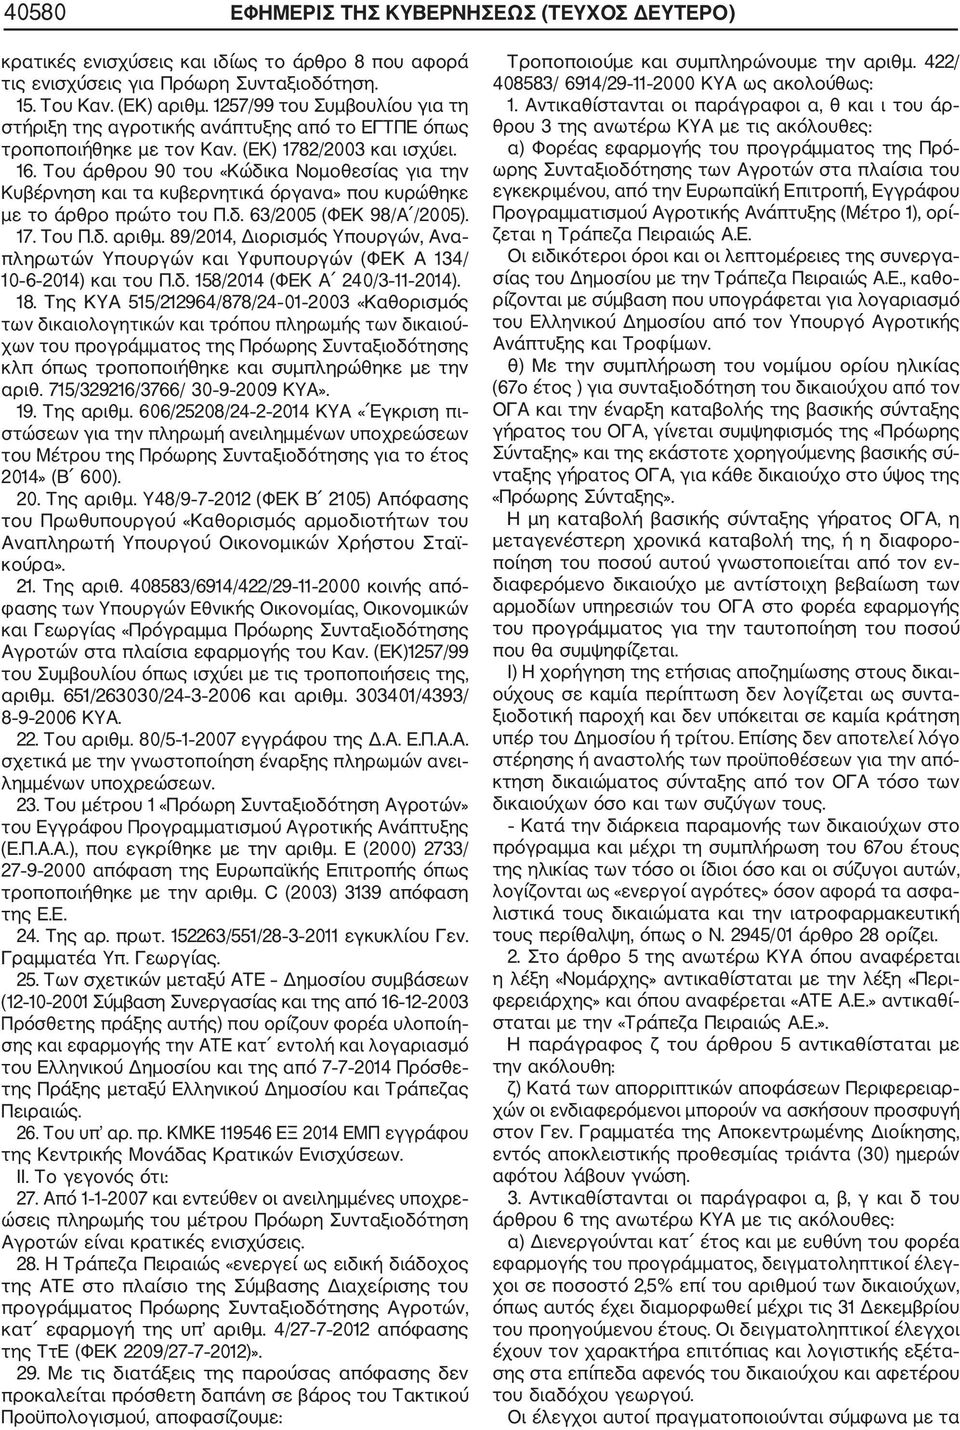 Του άρθρου 90 του «Κώδικα Νομοθεσίας για την Κυβέρνηση και τα κυβερνητικά όργανα» που κυρώθηκε με το άρθρο πρώτο του Π.δ. 63/2005 (ΦΕΚ 98/Α /2005). 17. Του Π.δ. αριθμ.